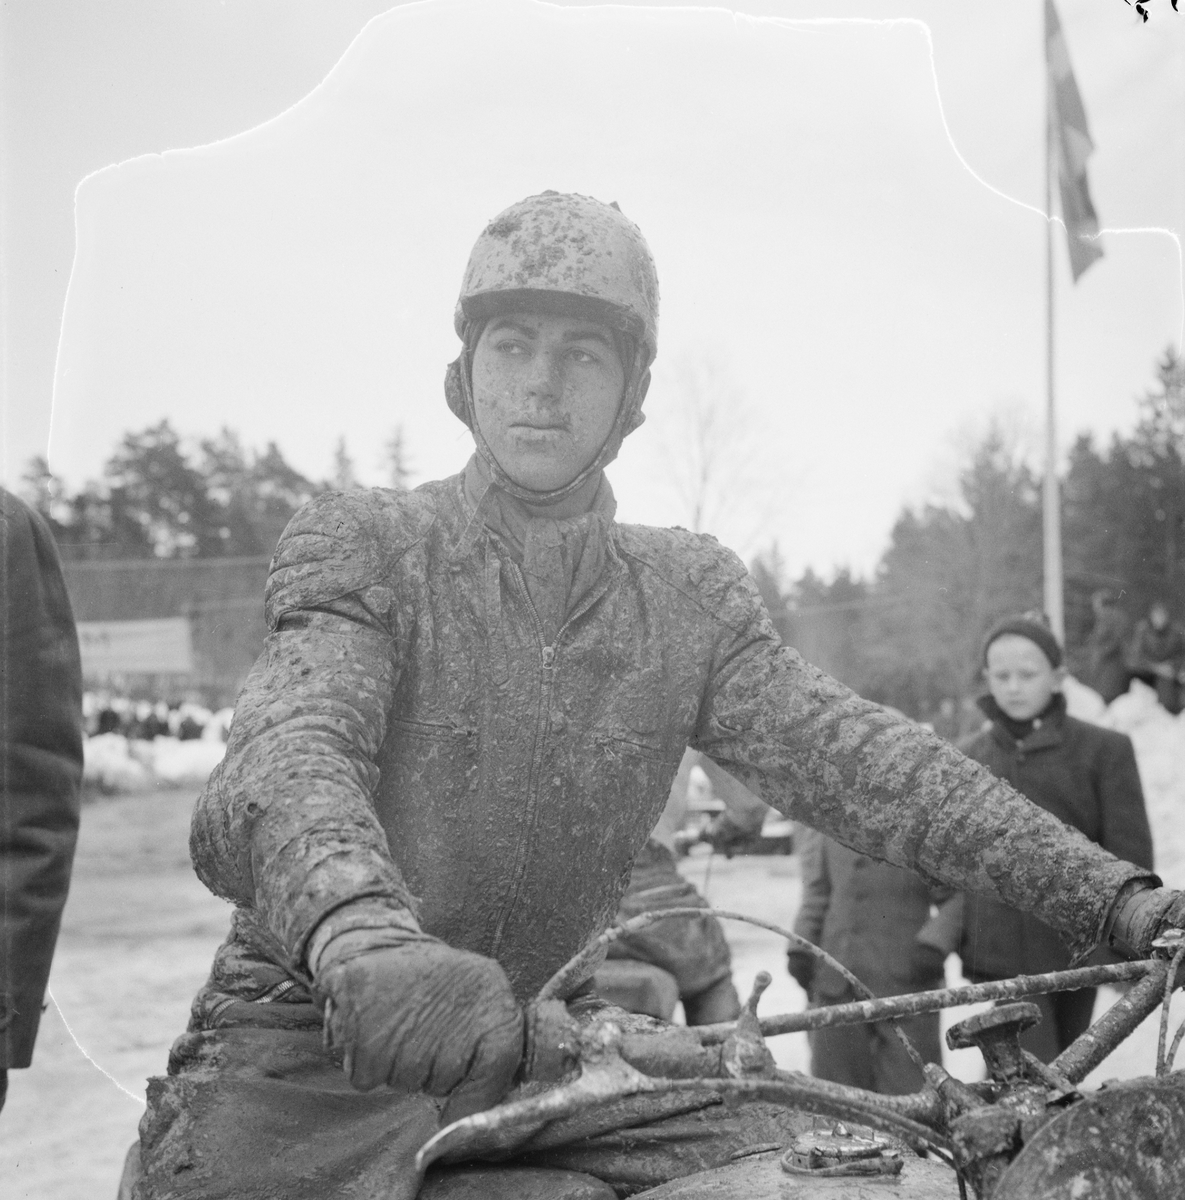 Motocross i Tjocksta, Danmarks socken, Uppland 1954